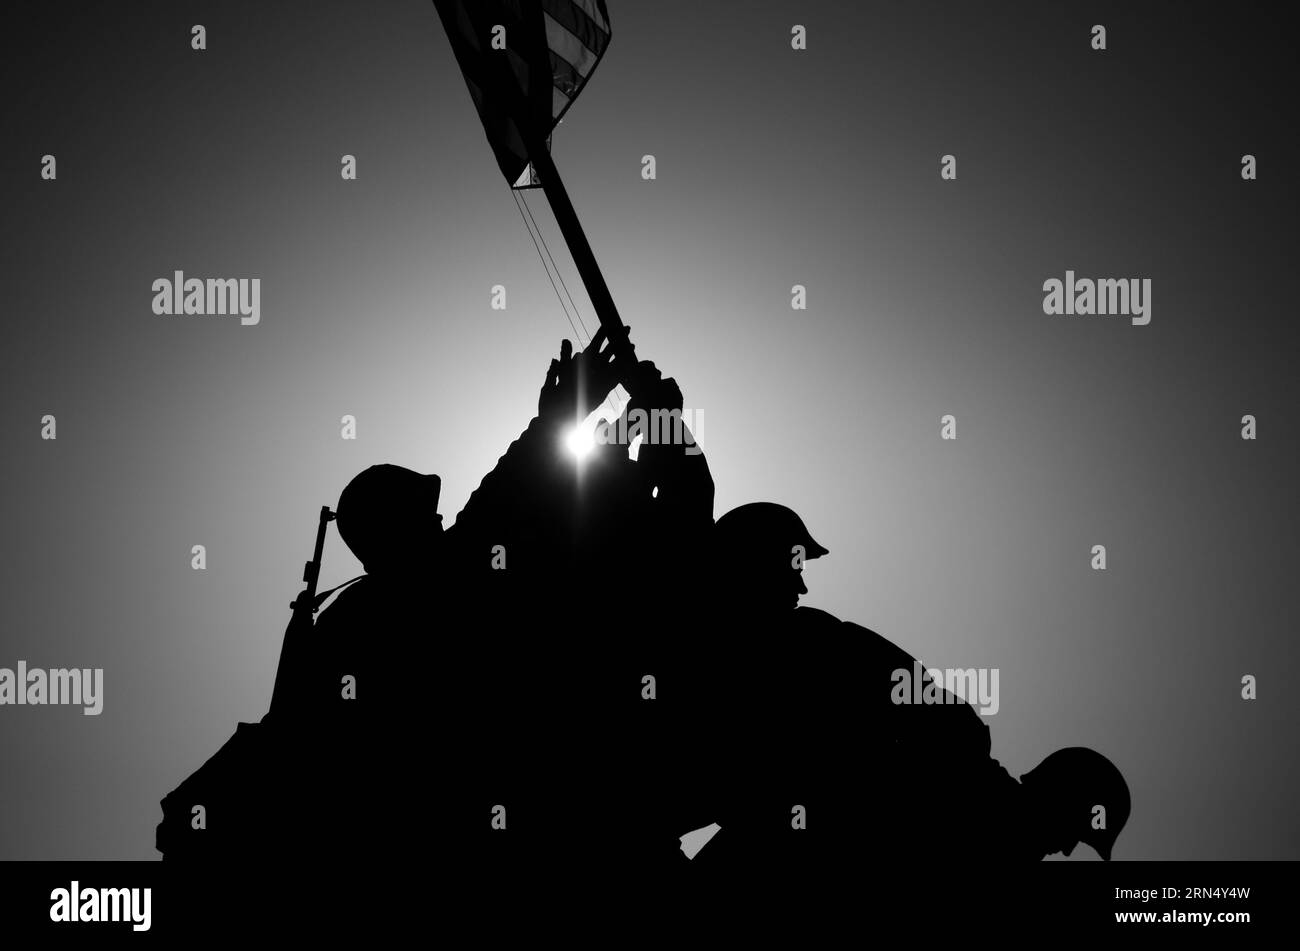 ARLINGTON, VA, Vereinigte Staaten – das Iwo Jima Memorial, auch bekannt als Marine Corps war Memorial, ist eine machtvolle Hommage an die Tapferkeit der US Marines während des Zweiten Weltkriegs Stockfoto